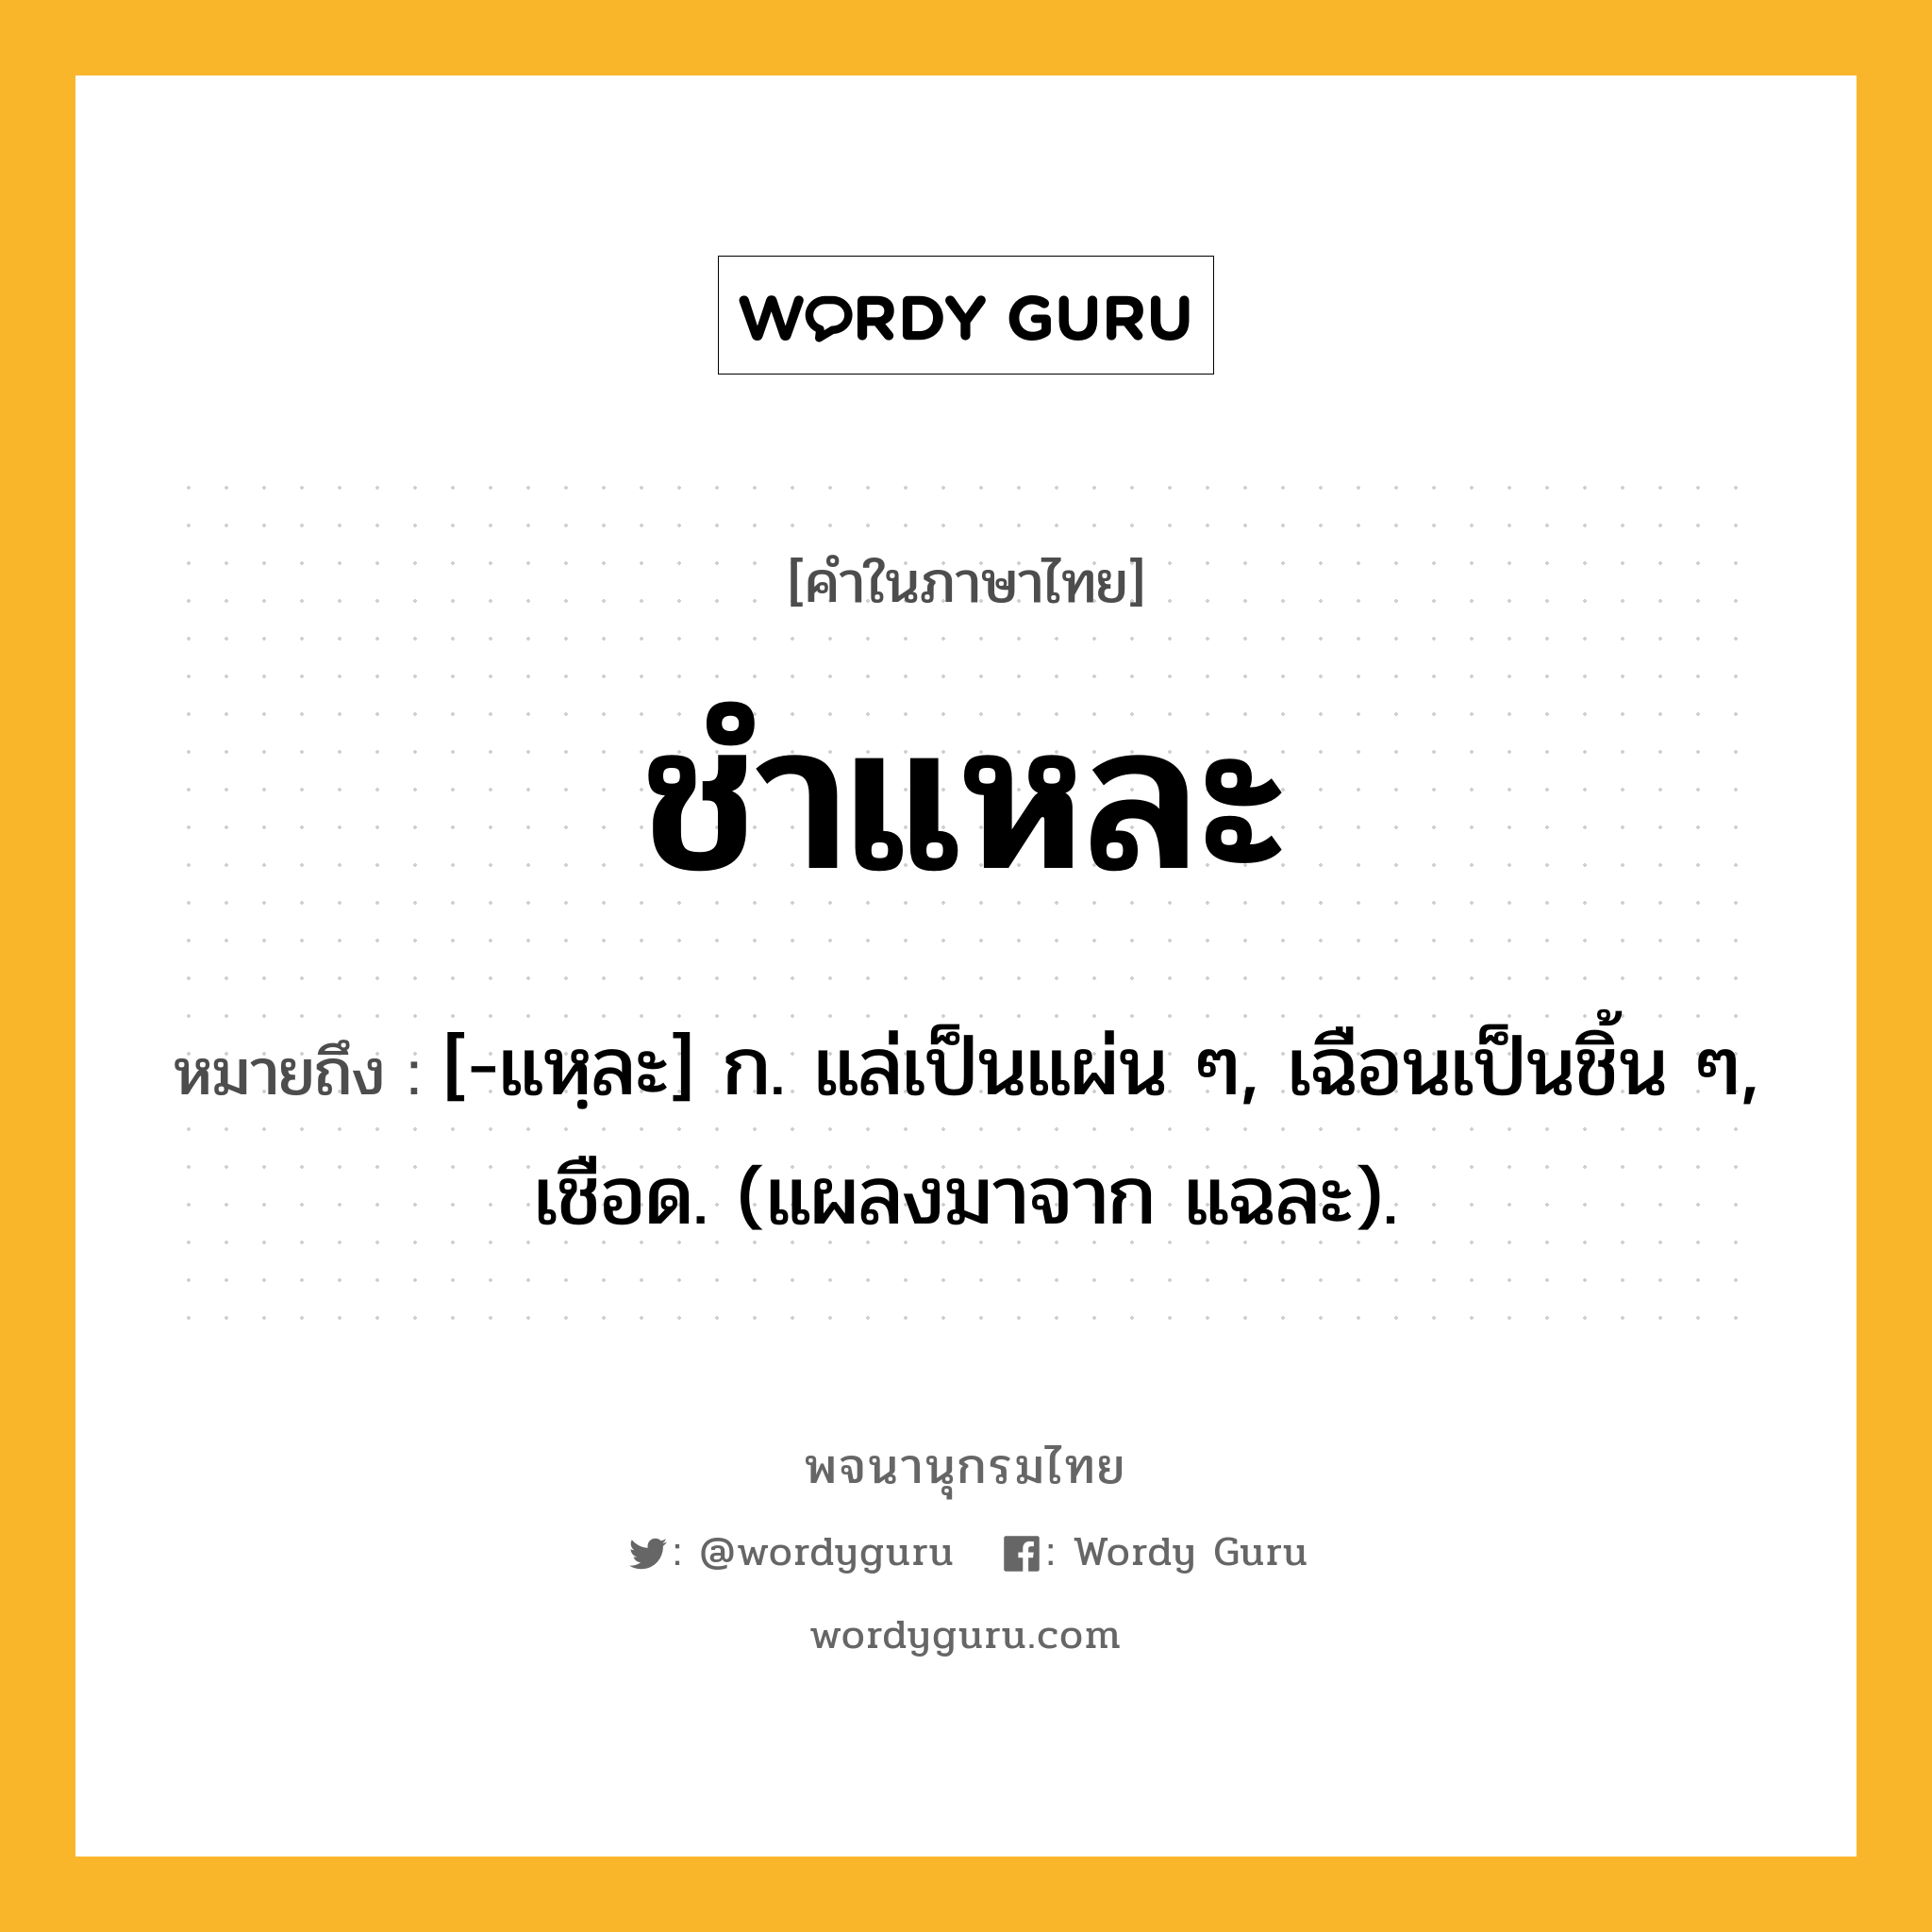 ชำแหละ ความหมาย หมายถึงอะไร?, คำในภาษาไทย ชำแหละ หมายถึง [-แหฺละ] ก. แล่เป็นแผ่น ๆ, เฉือนเป็นชิ้น ๆ, เชือด. (แผลงมาจาก แฉละ).